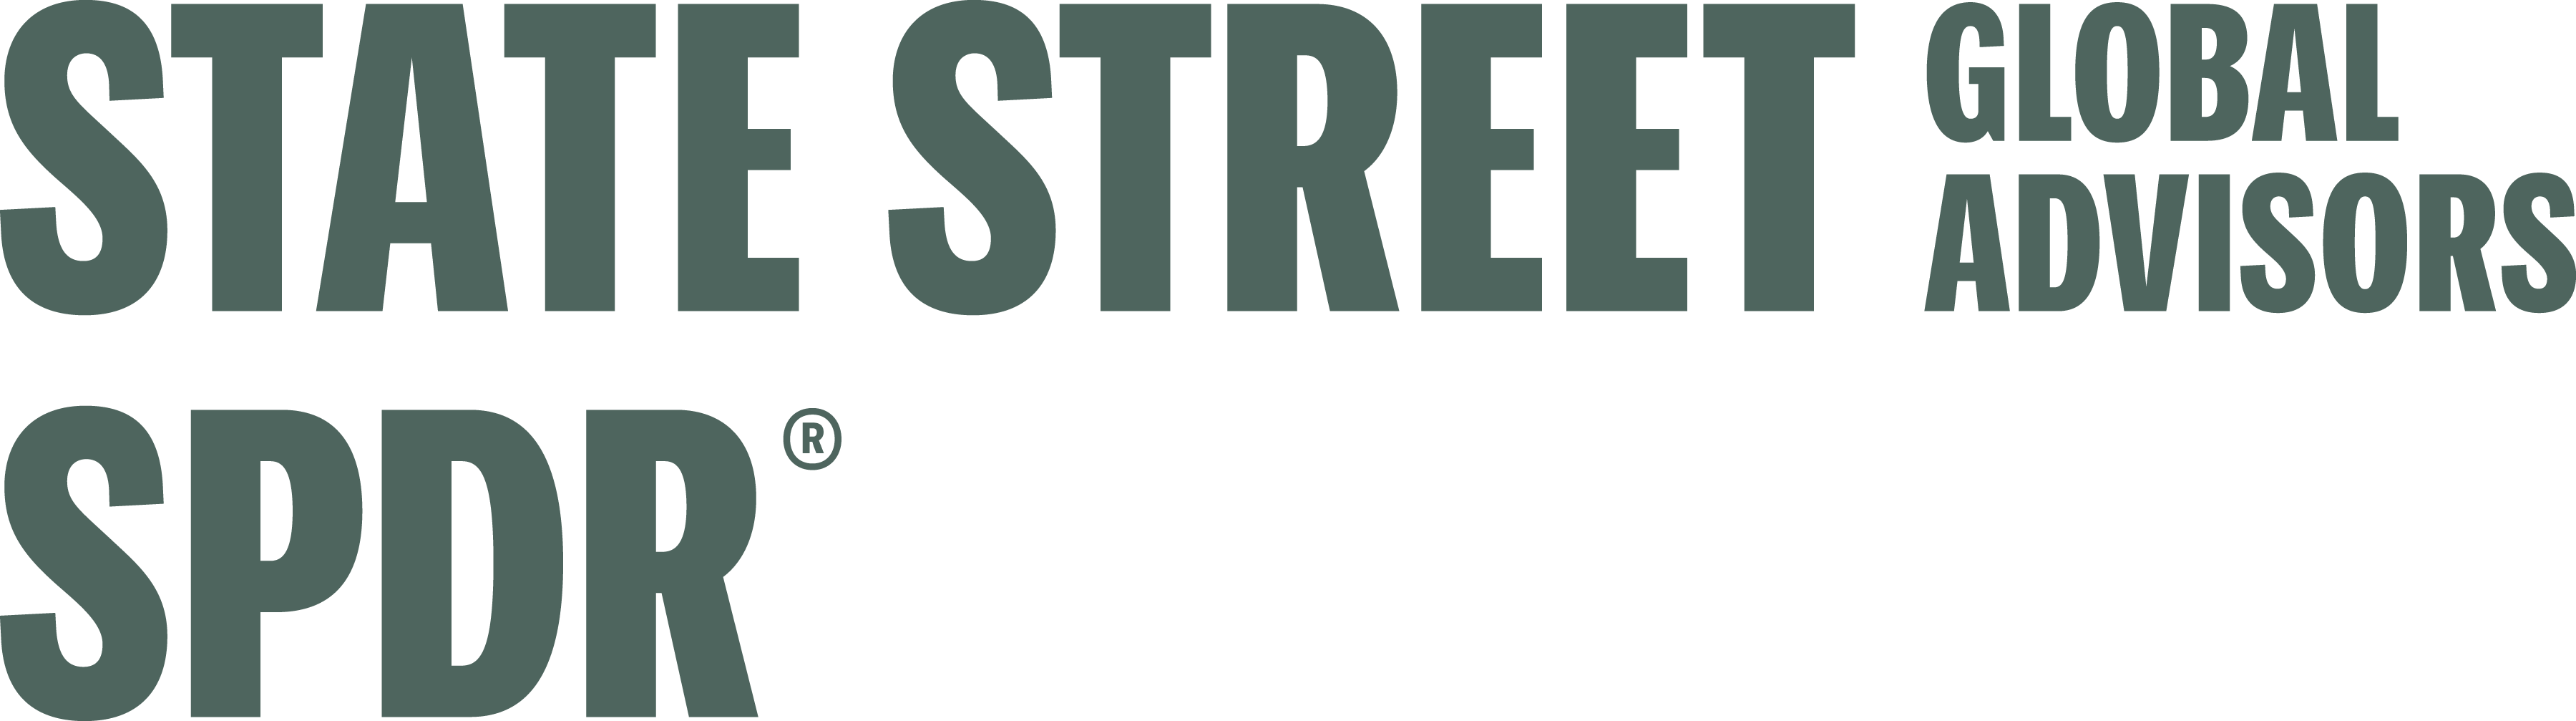 Website - State Street Global Advisors SPDR